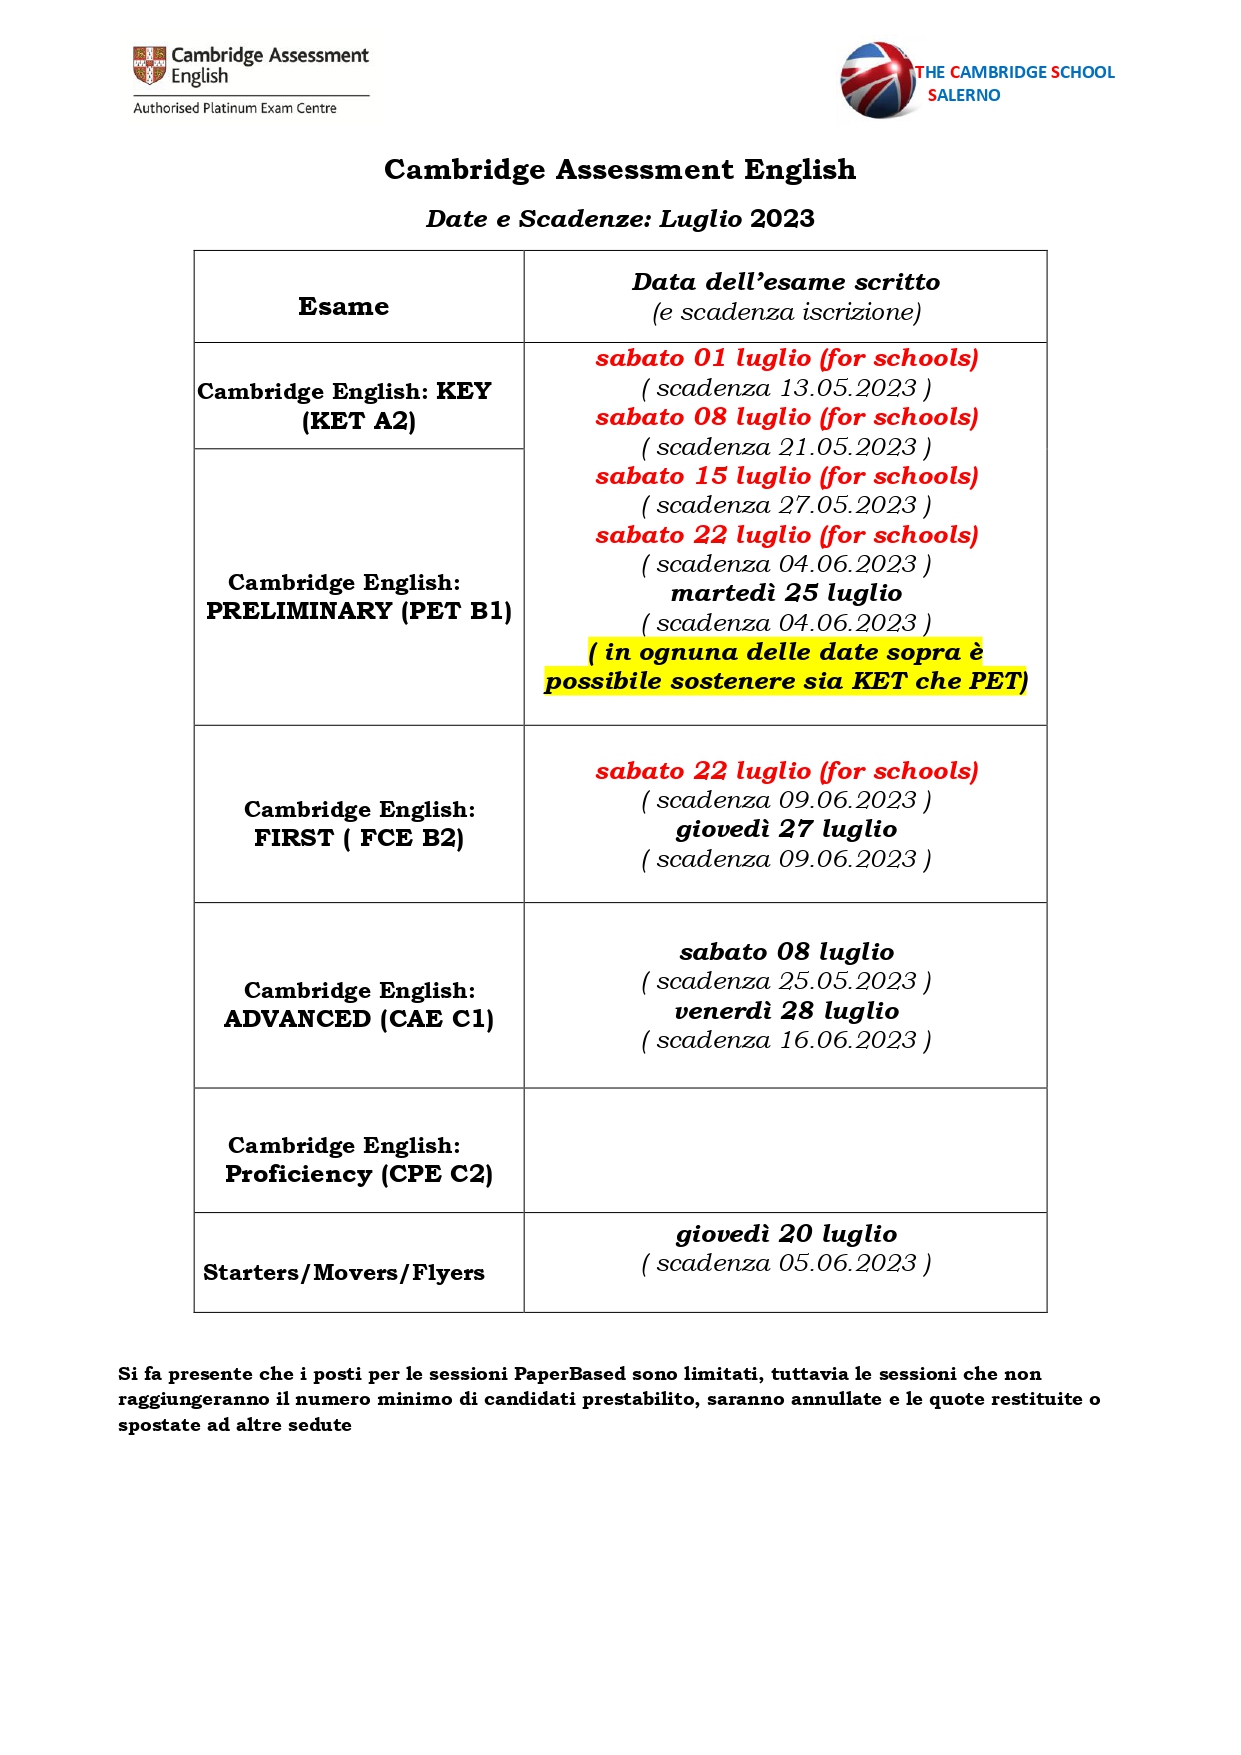 3_Entry form esami e prezzi legati LUGLIO FULL 2023 Napoli OK_page-0001